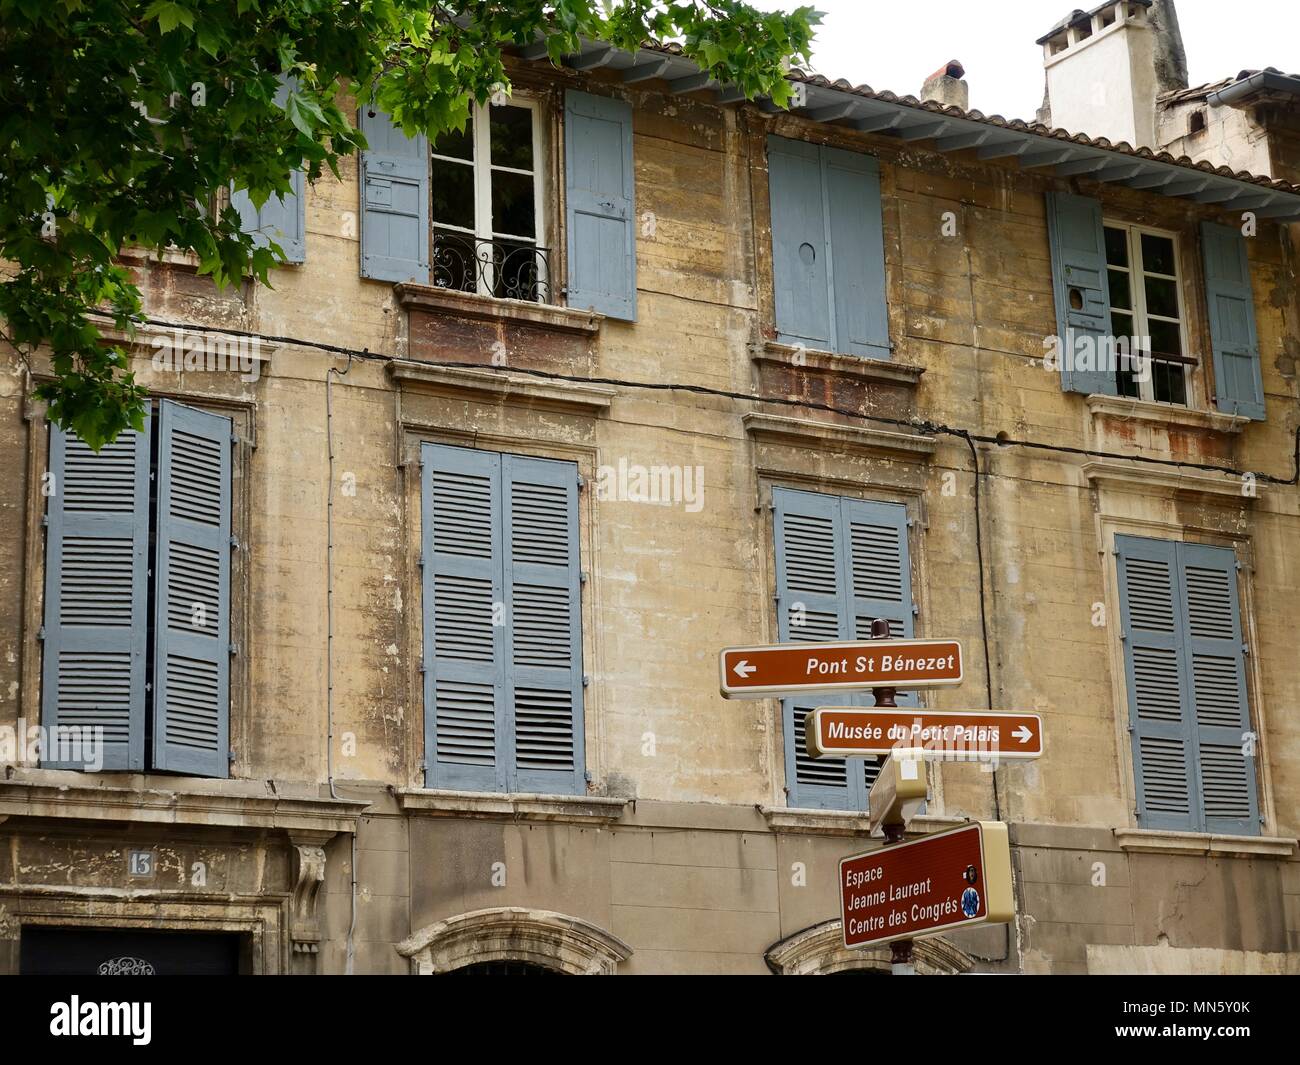 Des panneaux situés à l'avant d'un bâtiment en pierre traditionnel, avec des volets gris. Avignon, France Banque D'Images